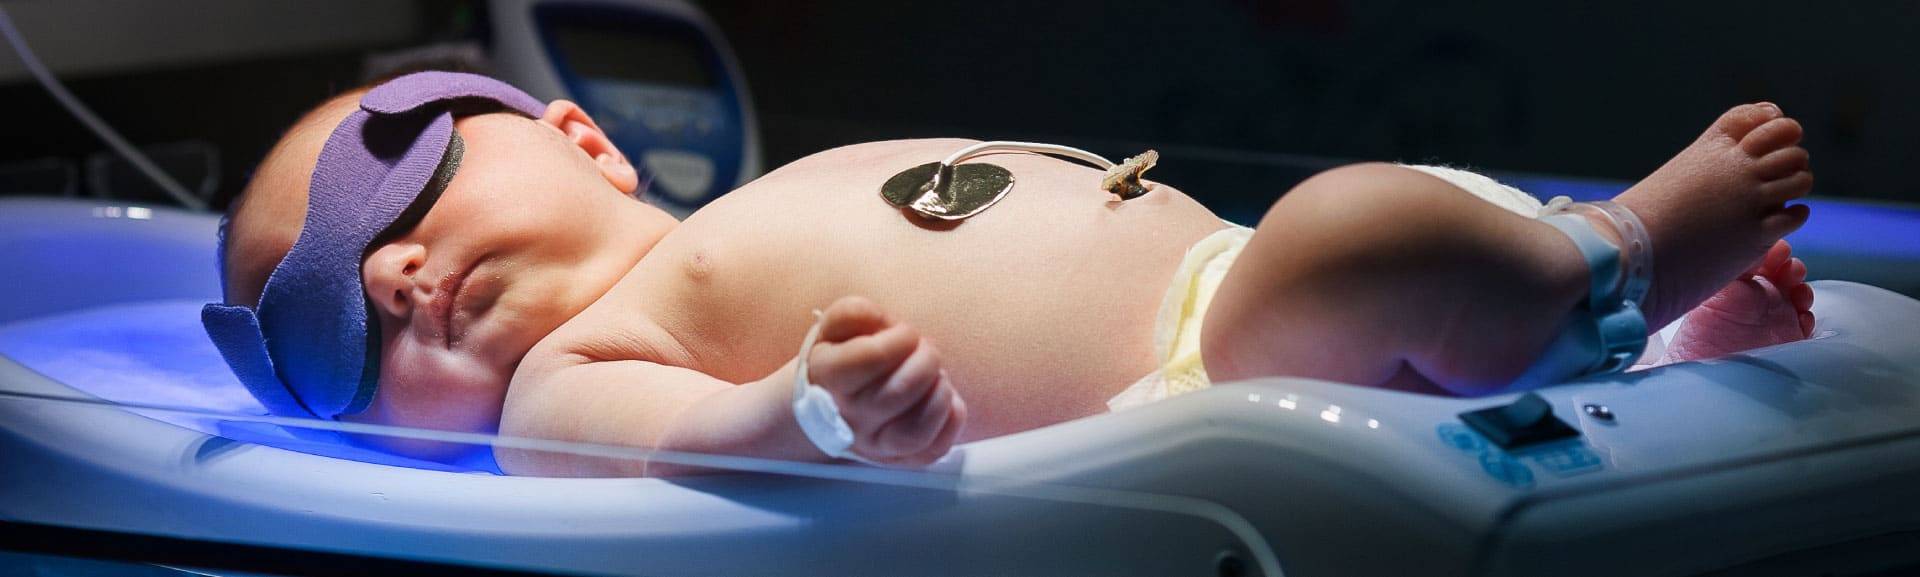 Традиционная фототерапия новорожденных